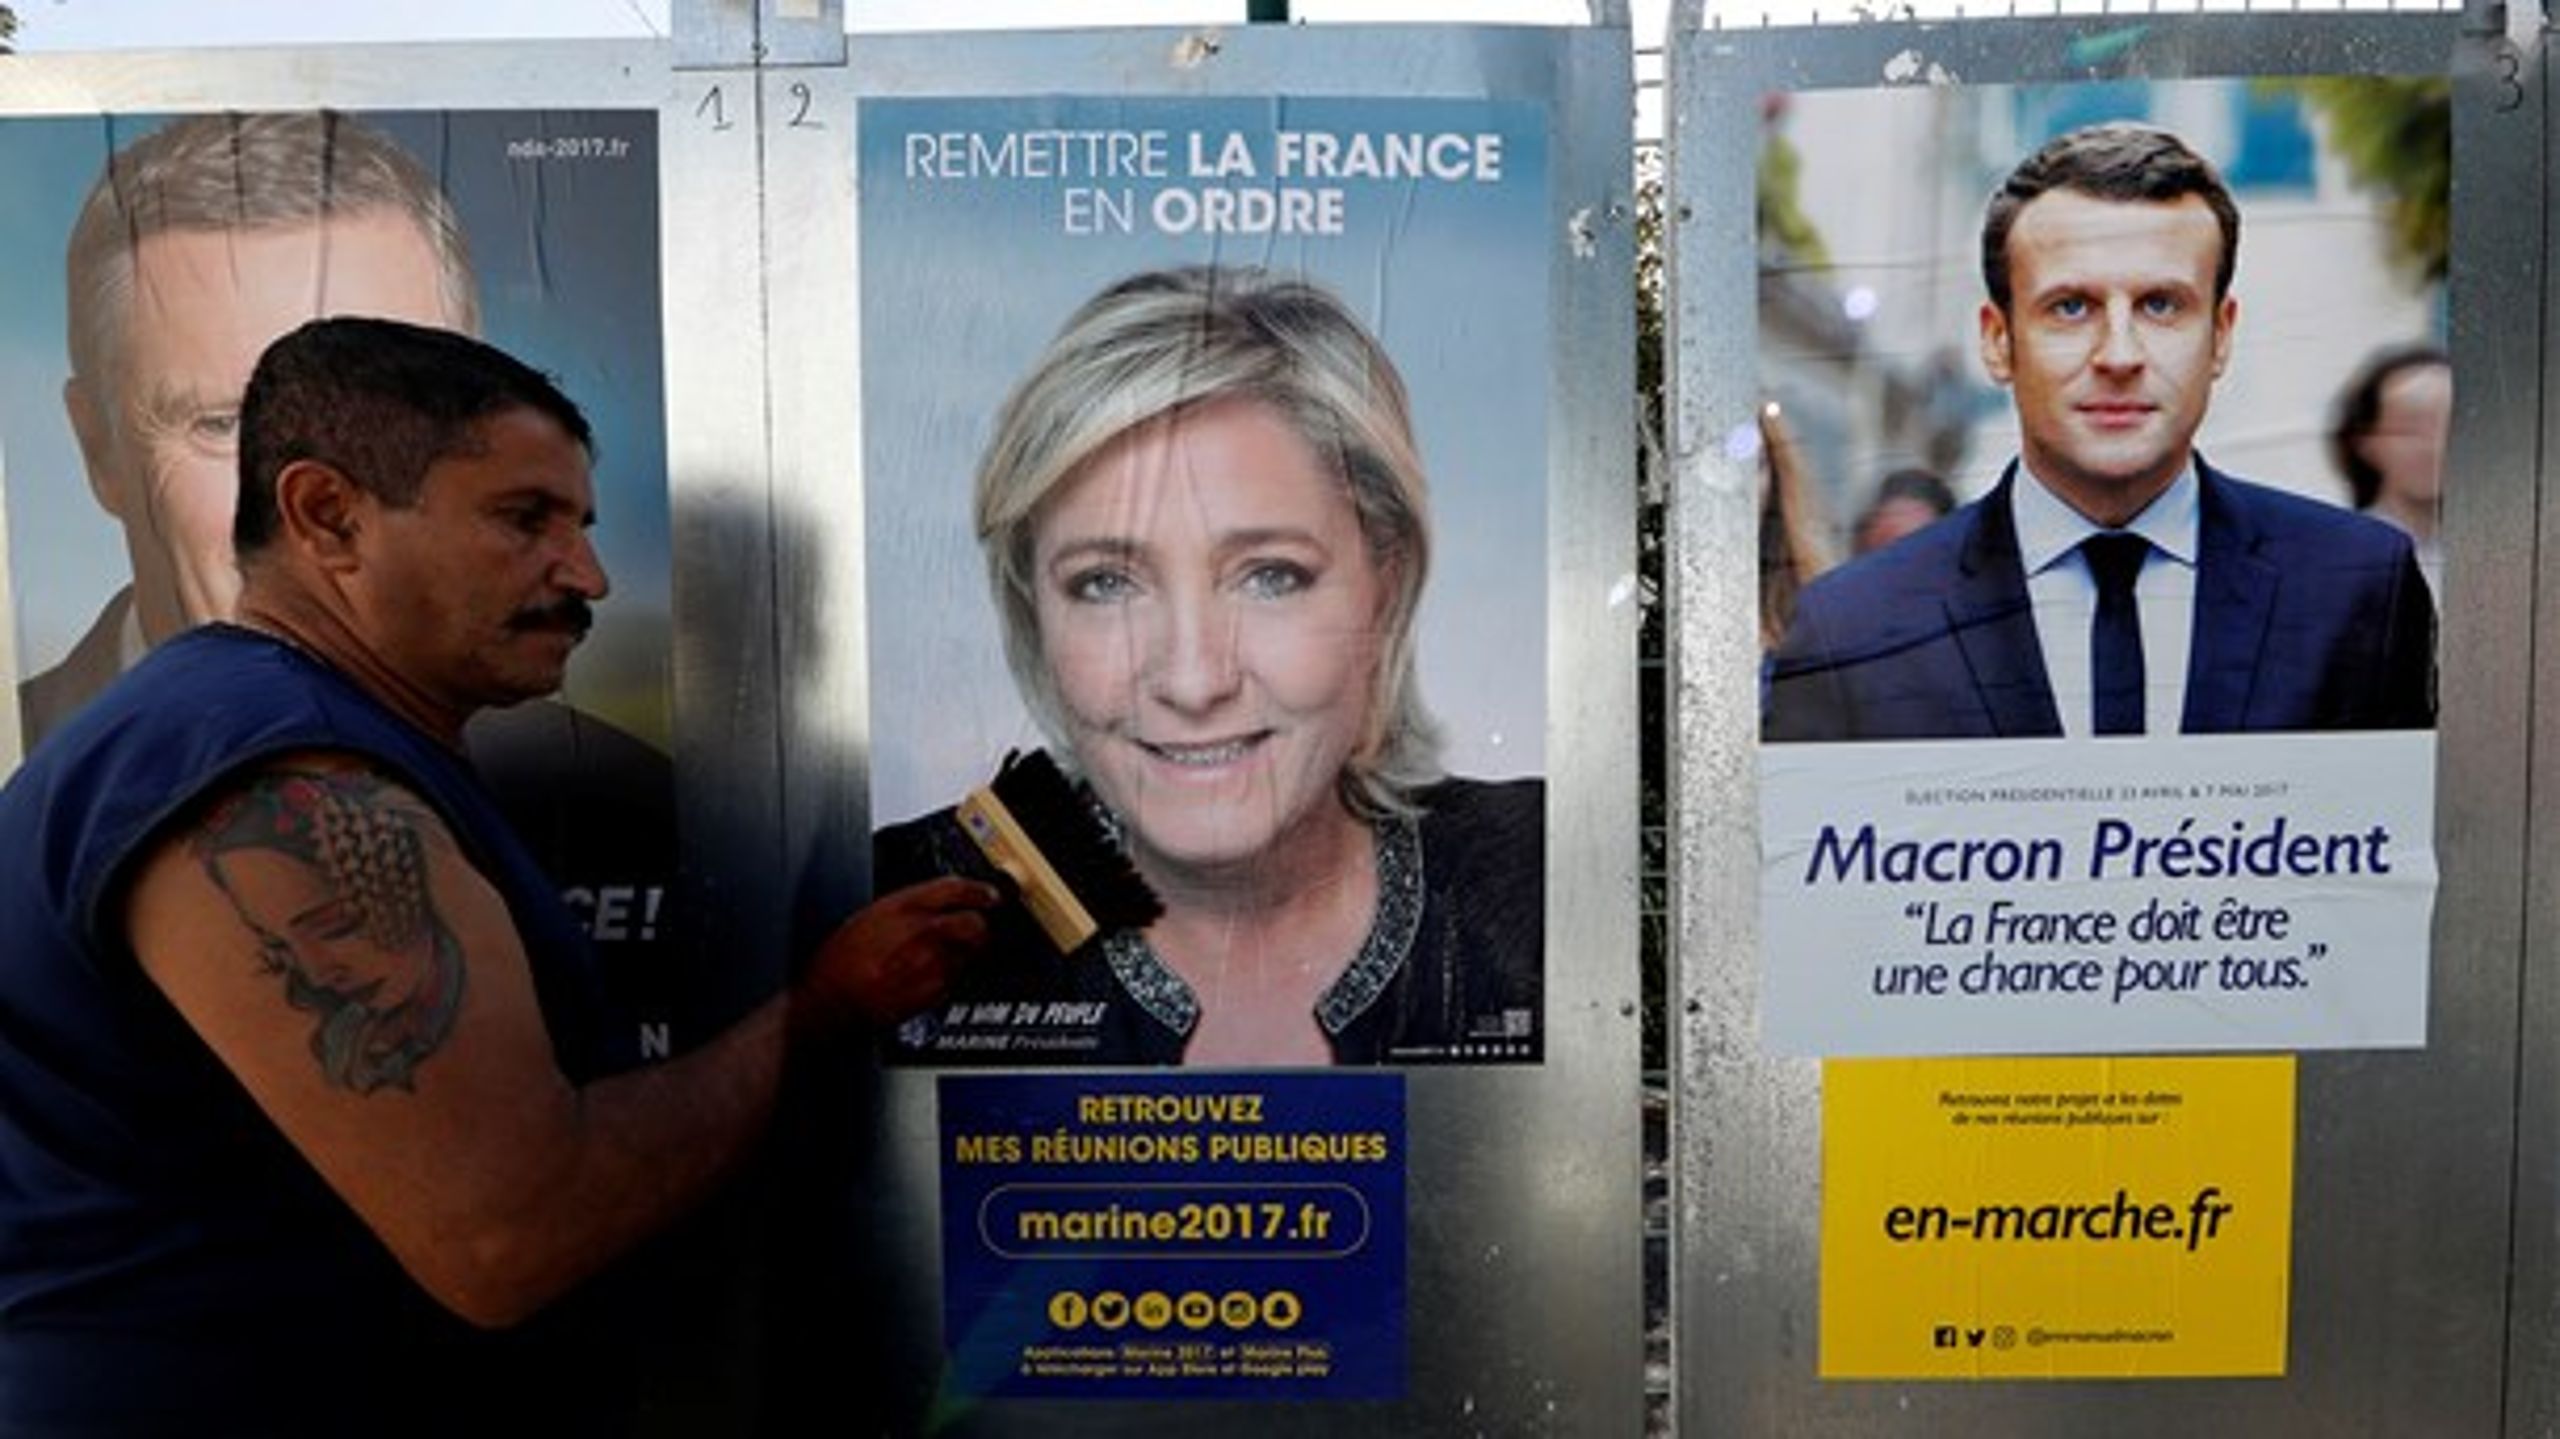 Franskmændene skal til stemmeurnerne den 23. april. Marine Le Pen og Emmanuel&nbsp;Macron har længe været favoritter, men meningsmålingerne viser, at de mister opbakning. Det tyder altså på en valggyser, der vil gå i&nbsp;anden valgrunde den 7. maj, skriver valgforsker Kenneth Thue i sin klumme